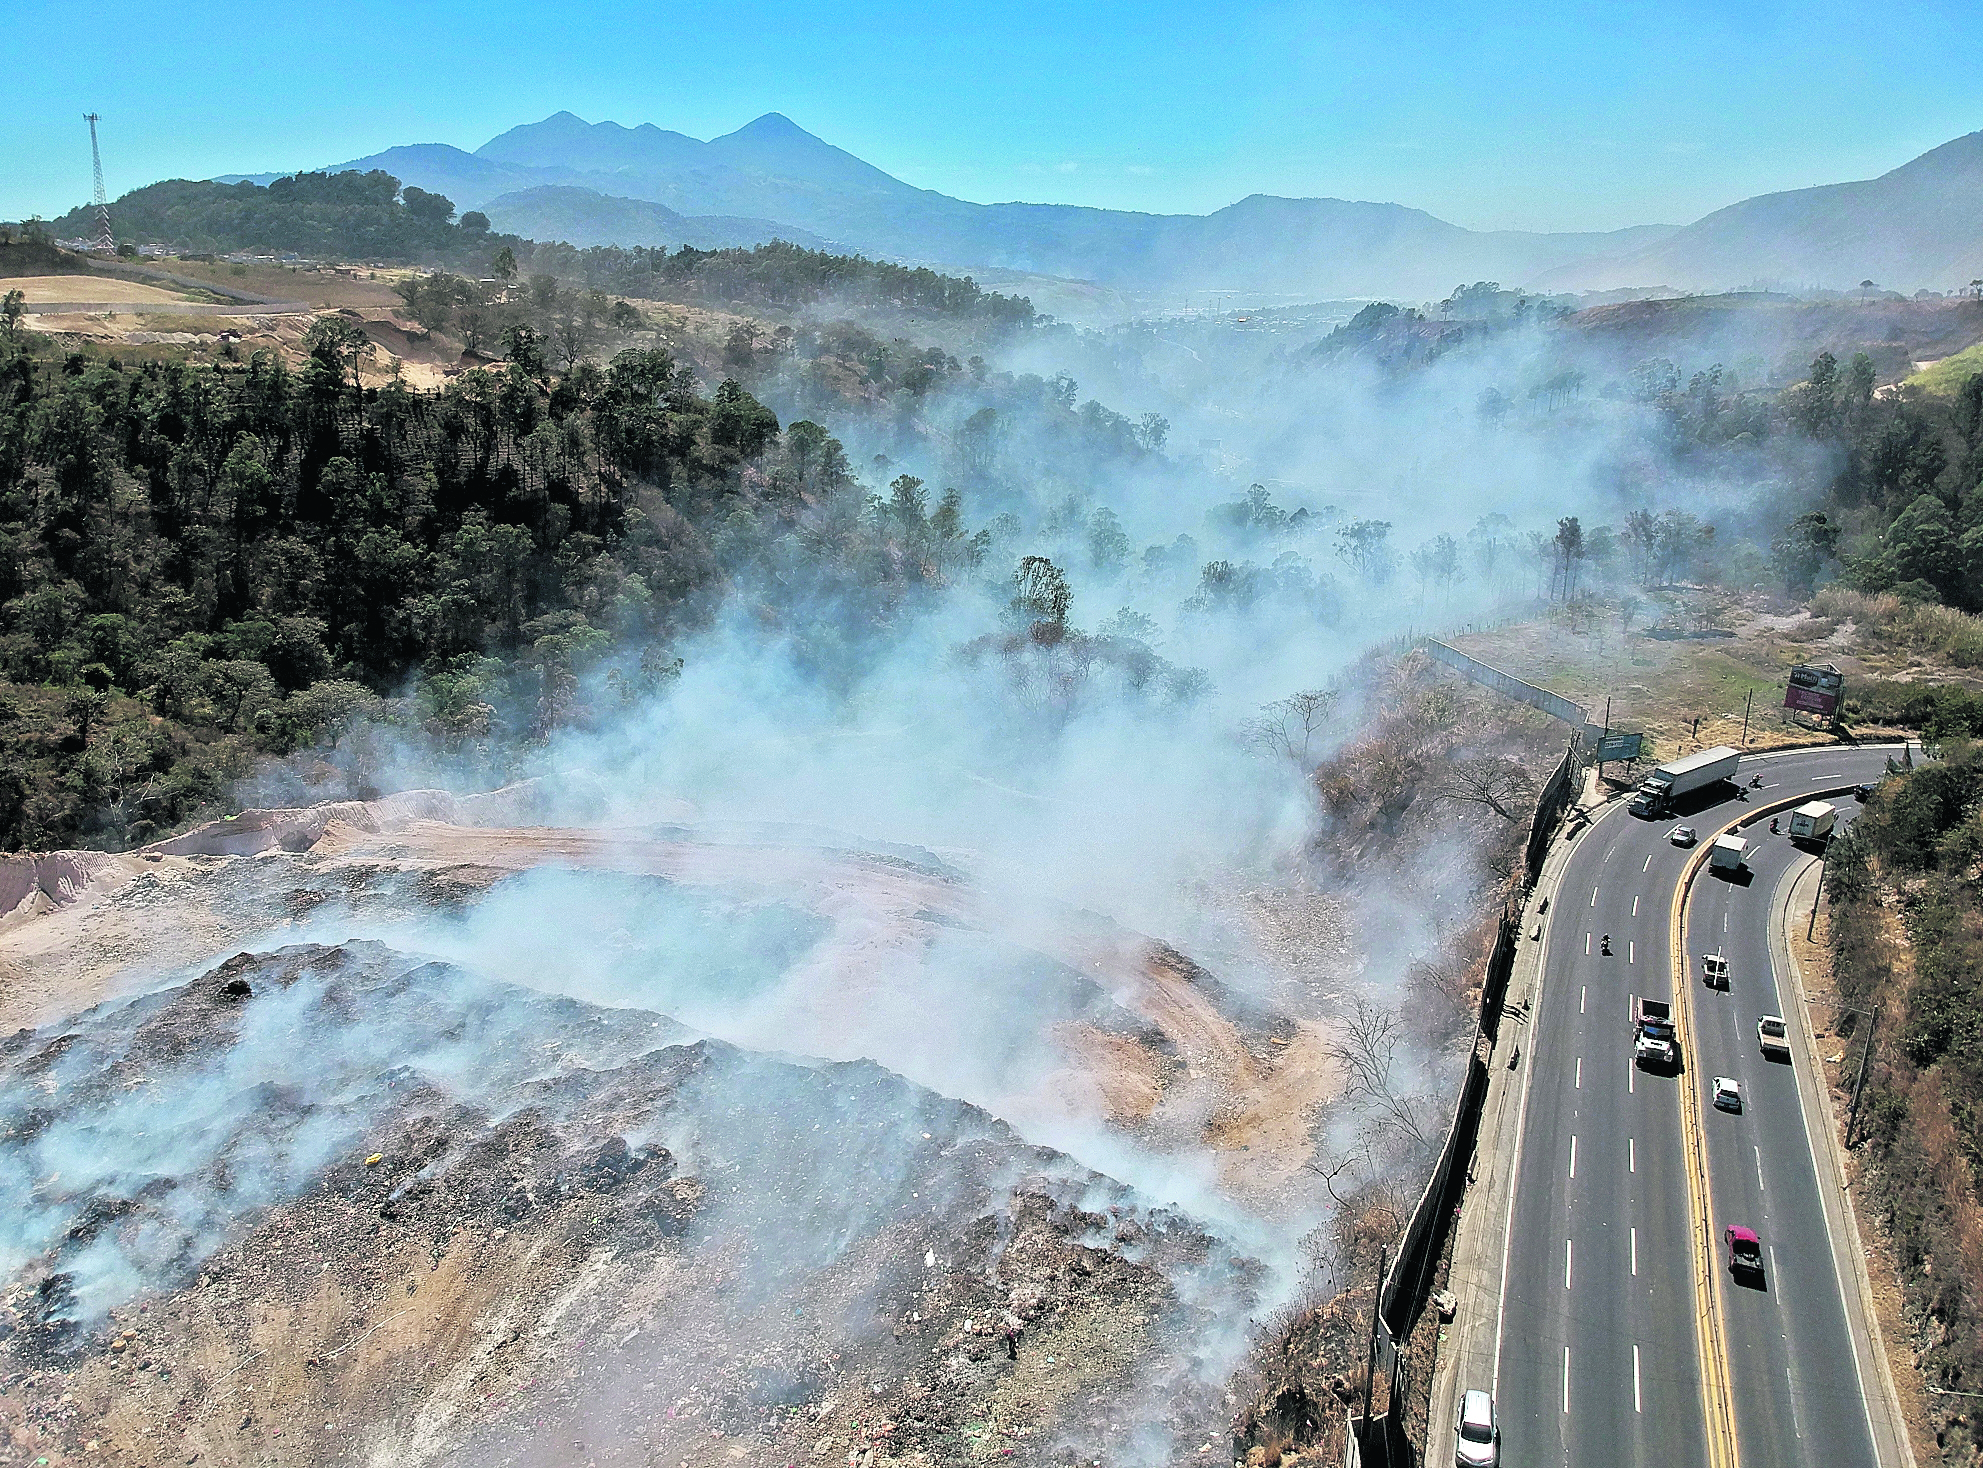 Incendio en el basurero de AMSA, desde noviembre autoridades no han podido apagar el incendio.

foto Carlos Hernández 
29/01/2021